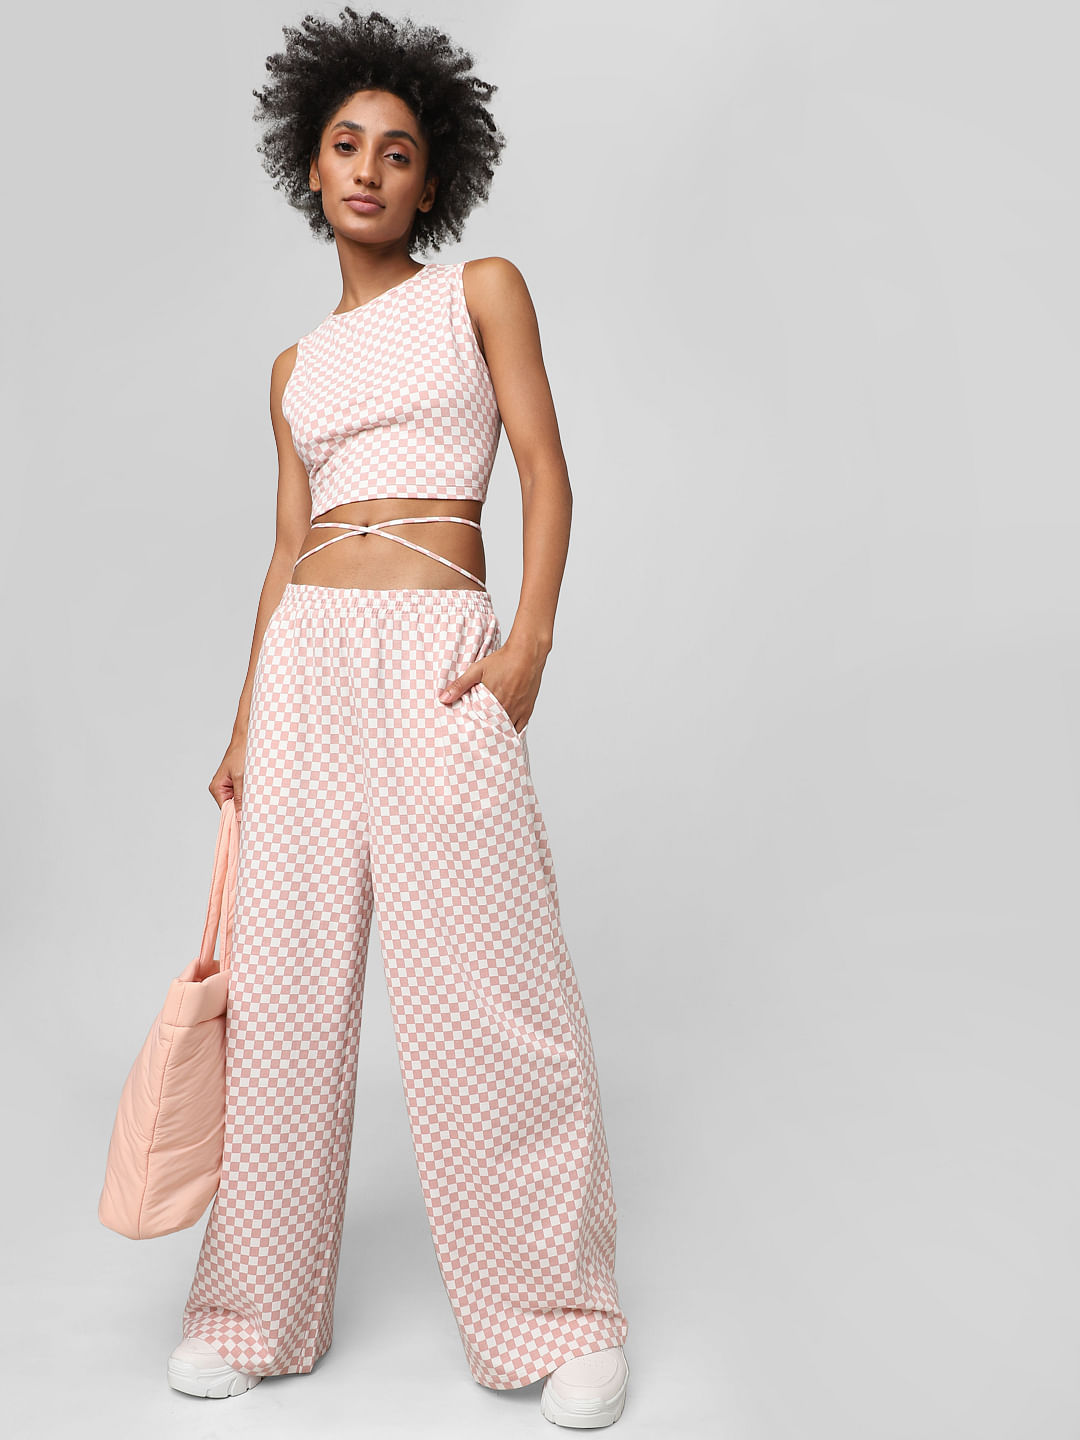 15 Amazing  Unique Polka Dot Pants Outfit Ideas  FMagcom